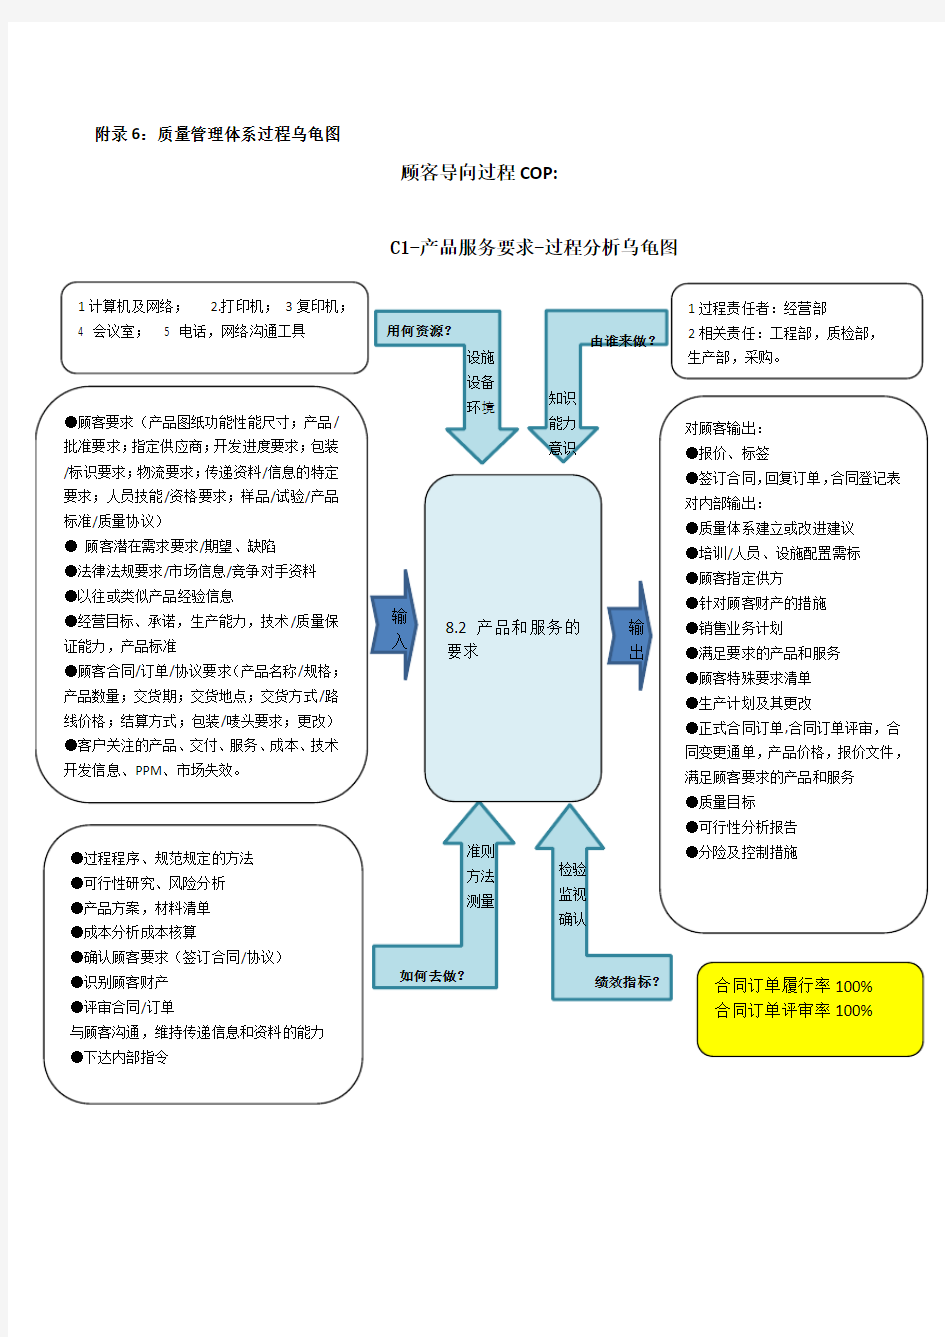 IATF16949质量管理体系过程乌龟图(完整版)